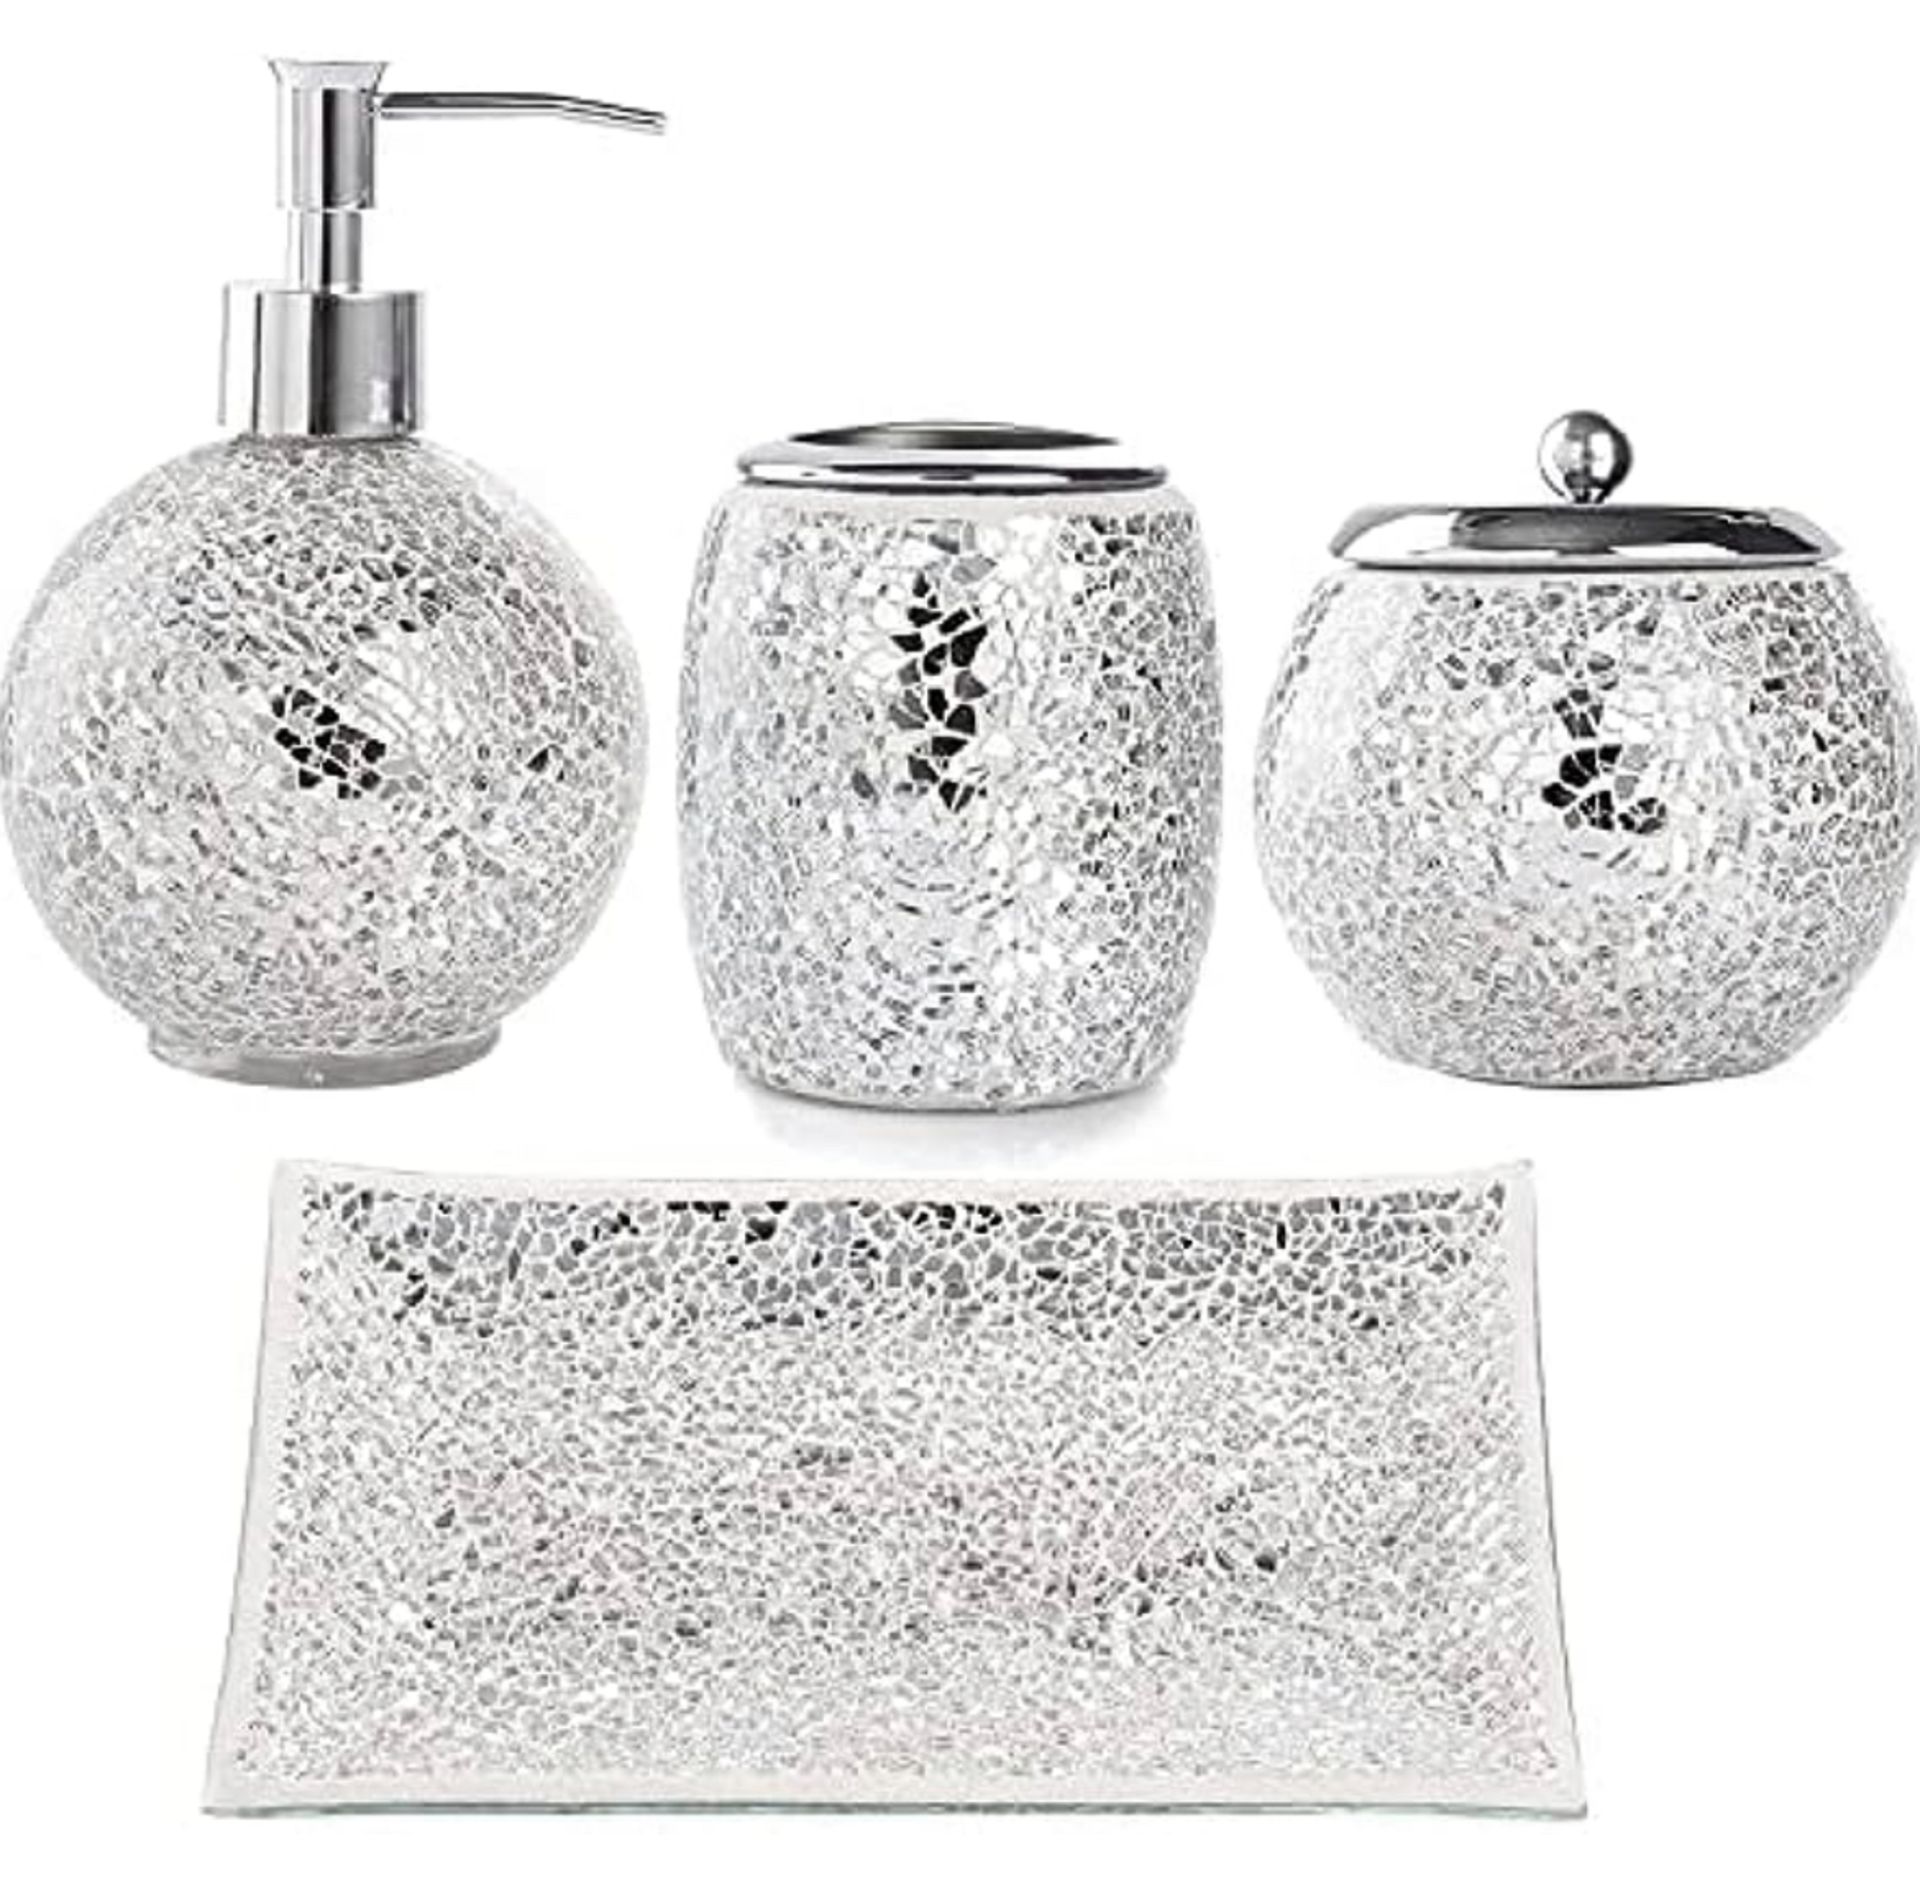 RAW RETURN - Whole Housewares 4 Piece Silver Bathroom Set